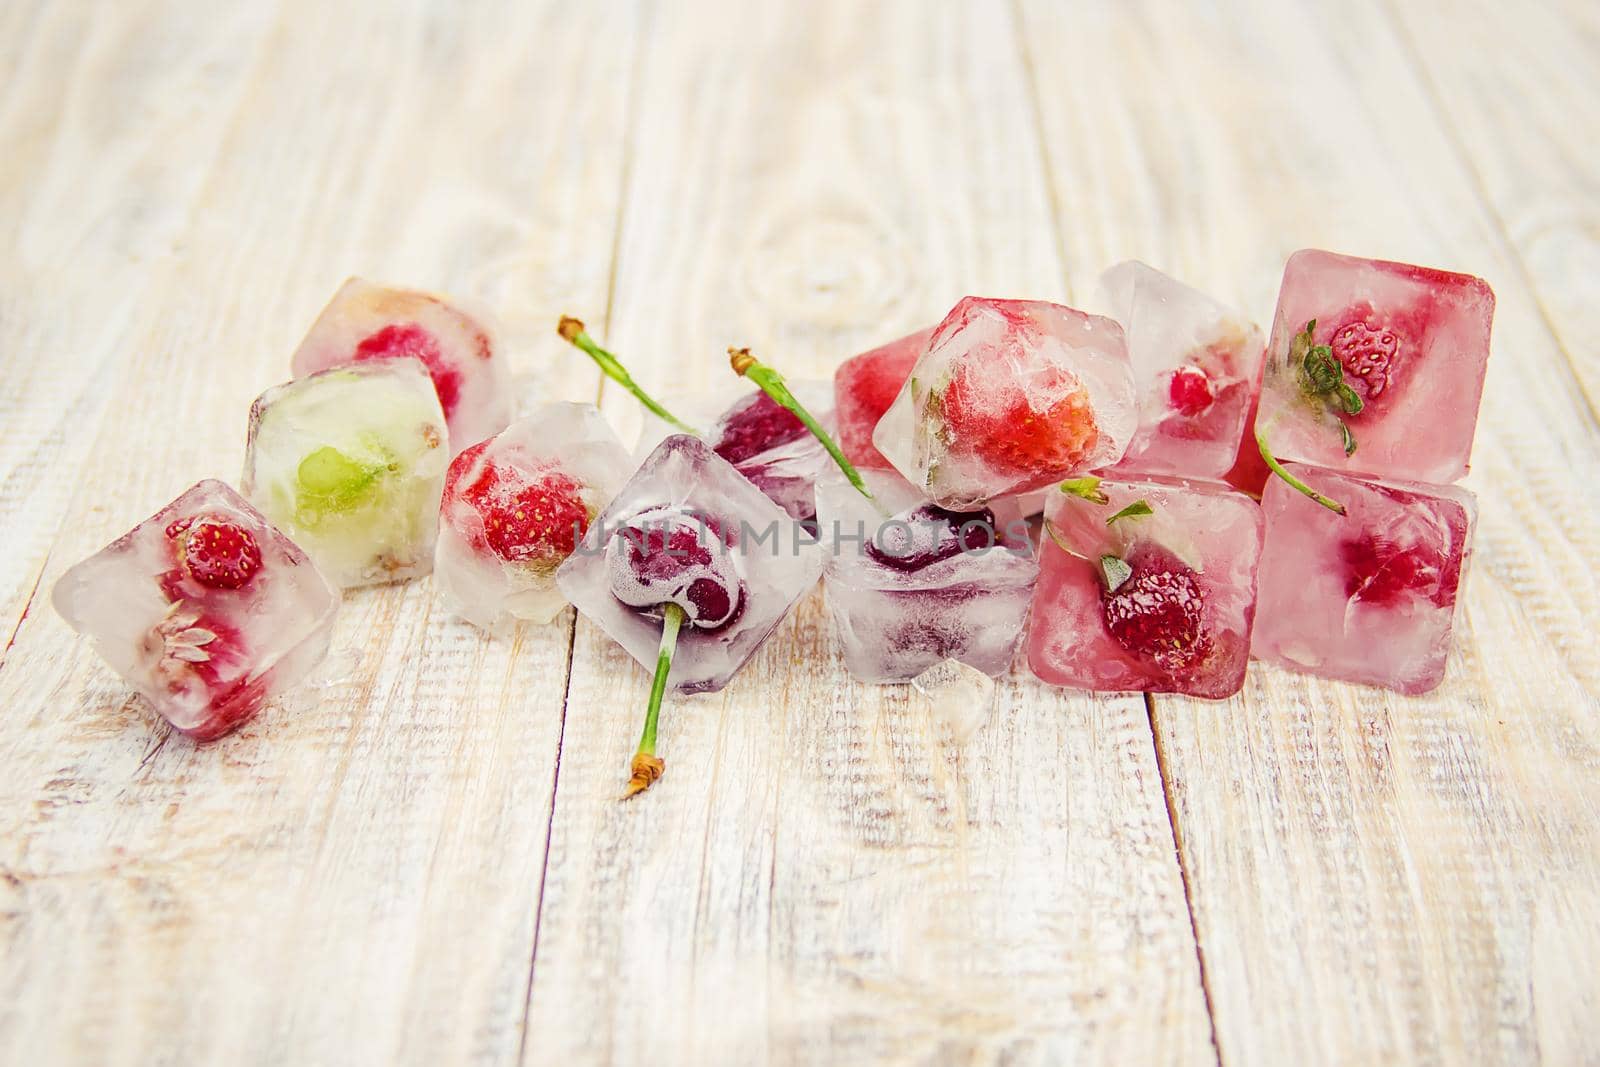 Berries frozen in ice cubes. Selective focus. by yanadjana